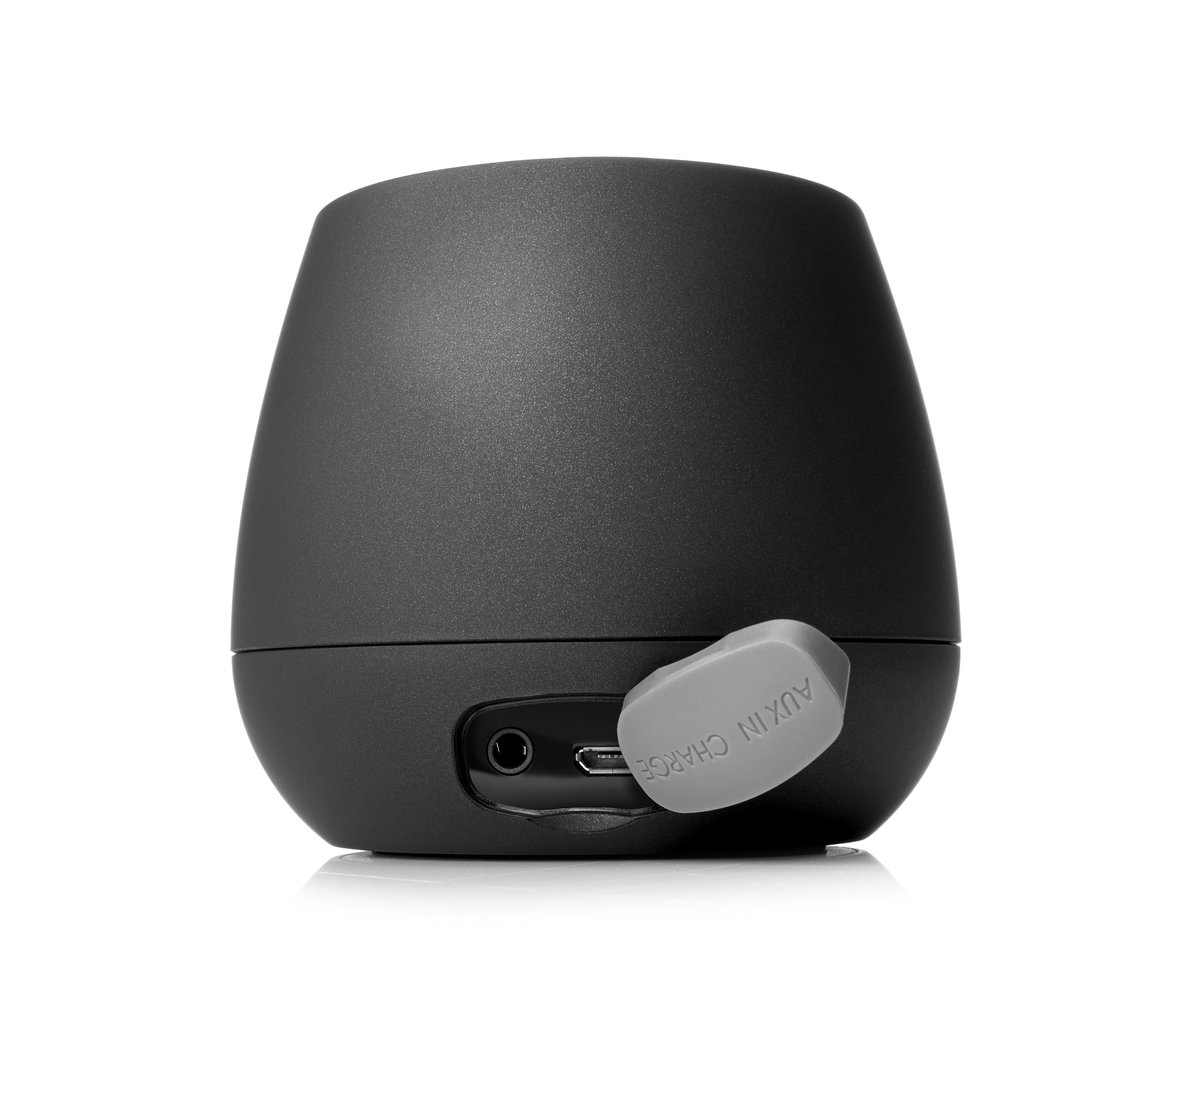 HP S6500 Black BT Wireless Speaker